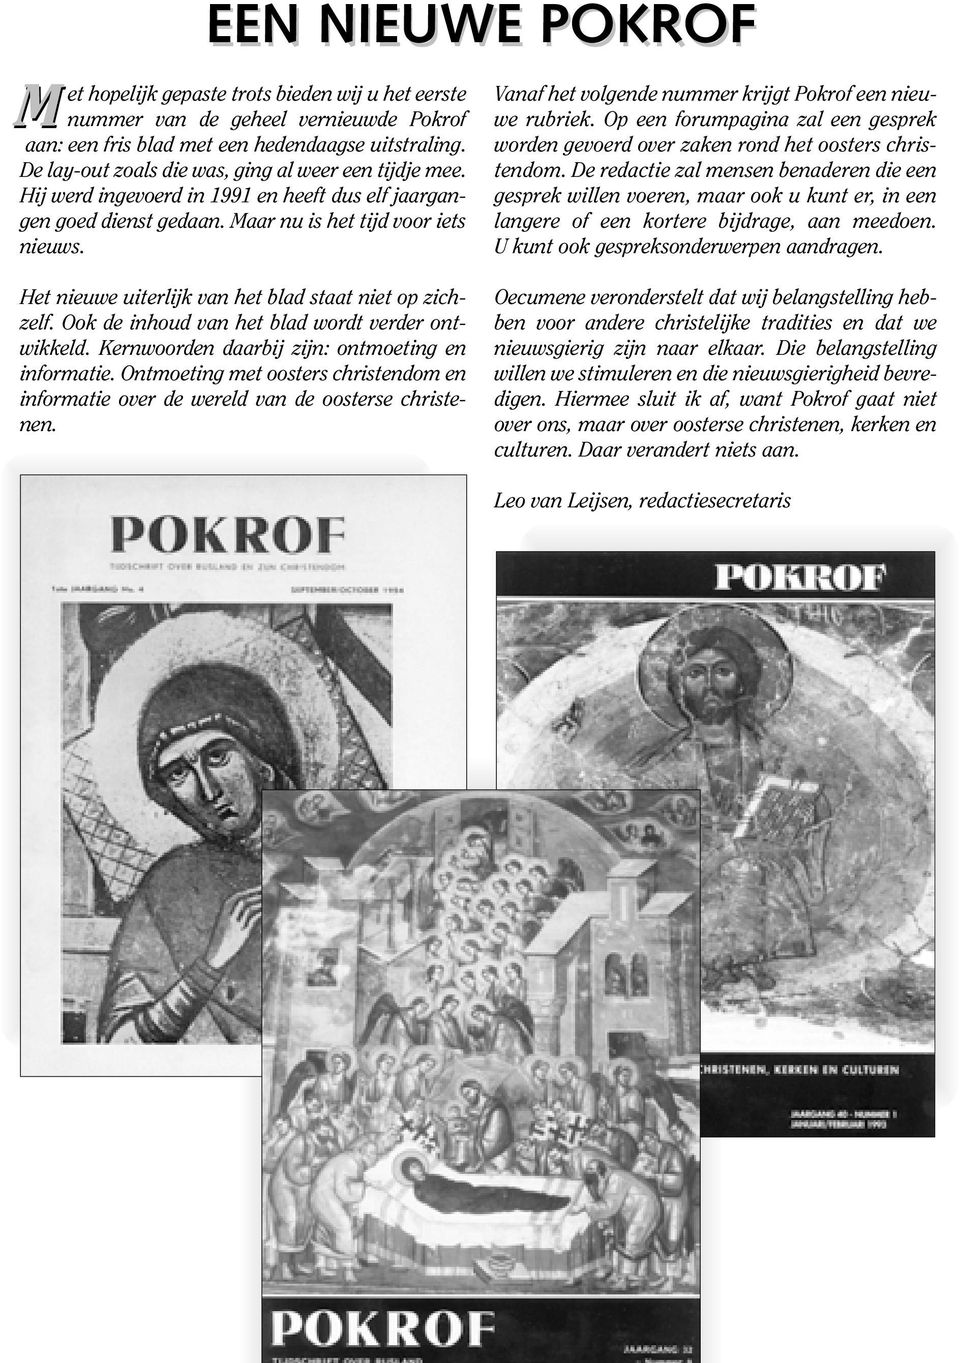 Vanaf het volgende nummer krijgt Pokrof een nieuwe rubriek. Op een forumpagina zal een gesprek worden gevoerd over zaken rond het oosters christendom.